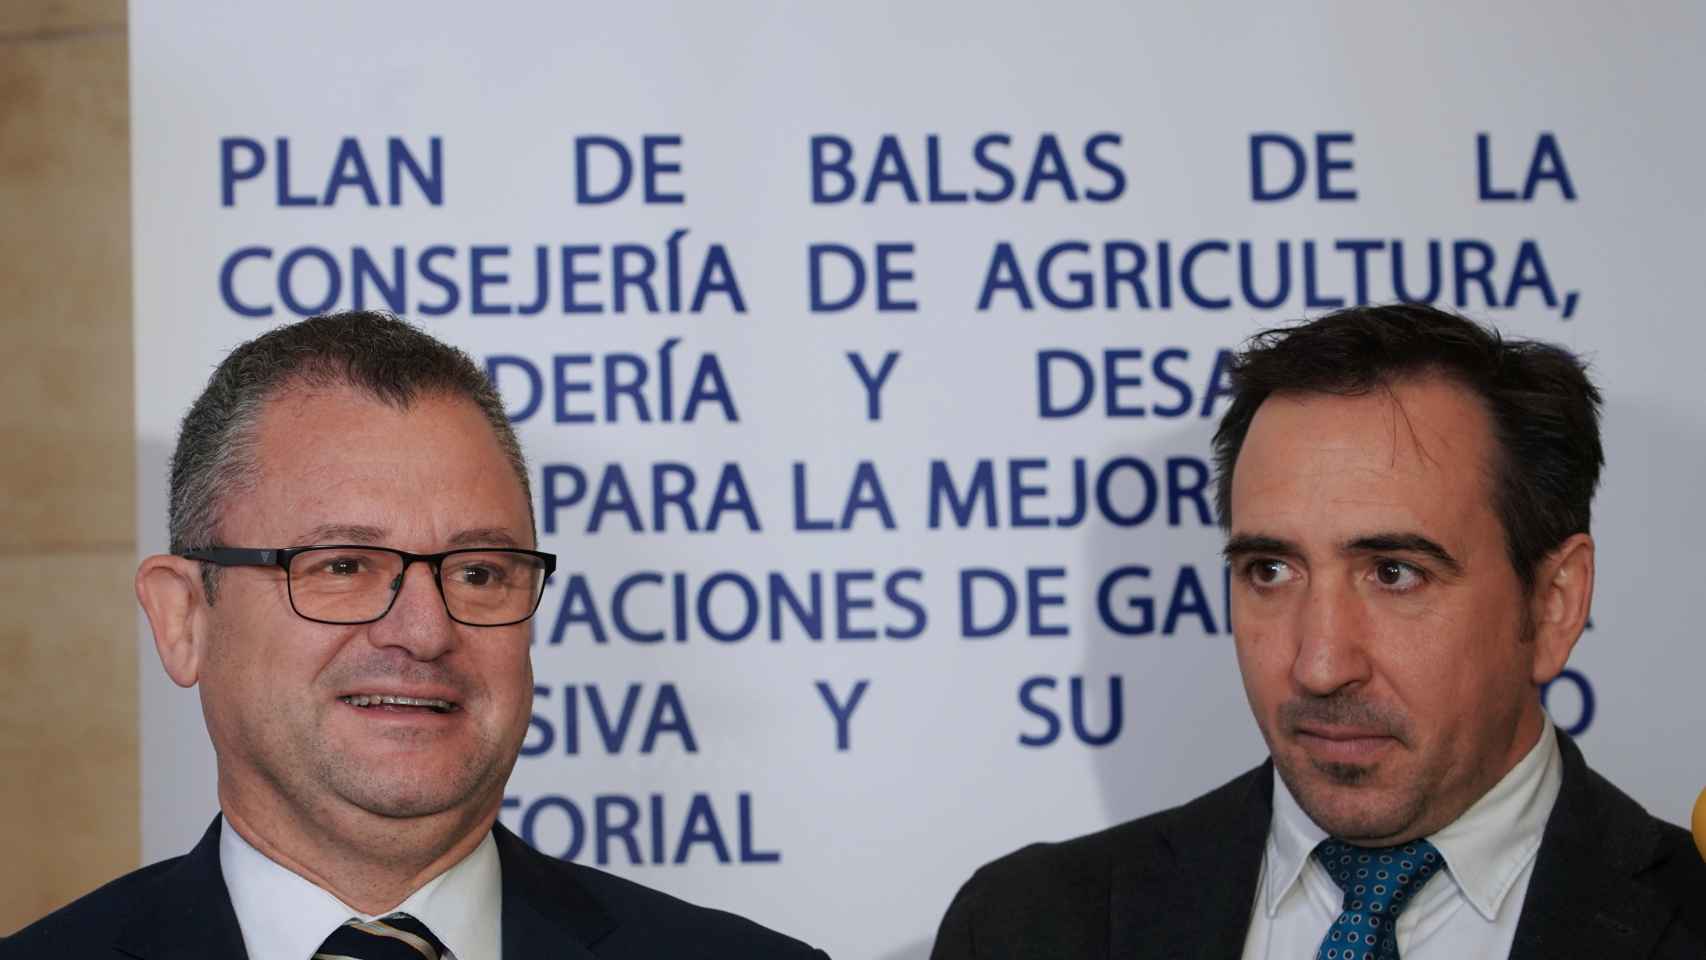 El consejero de Agricultura, Ganadería y Desarrollo Rural, Gerardo Dueñas, junto al director general de Desarrollo Rural Jorge Izquierdo